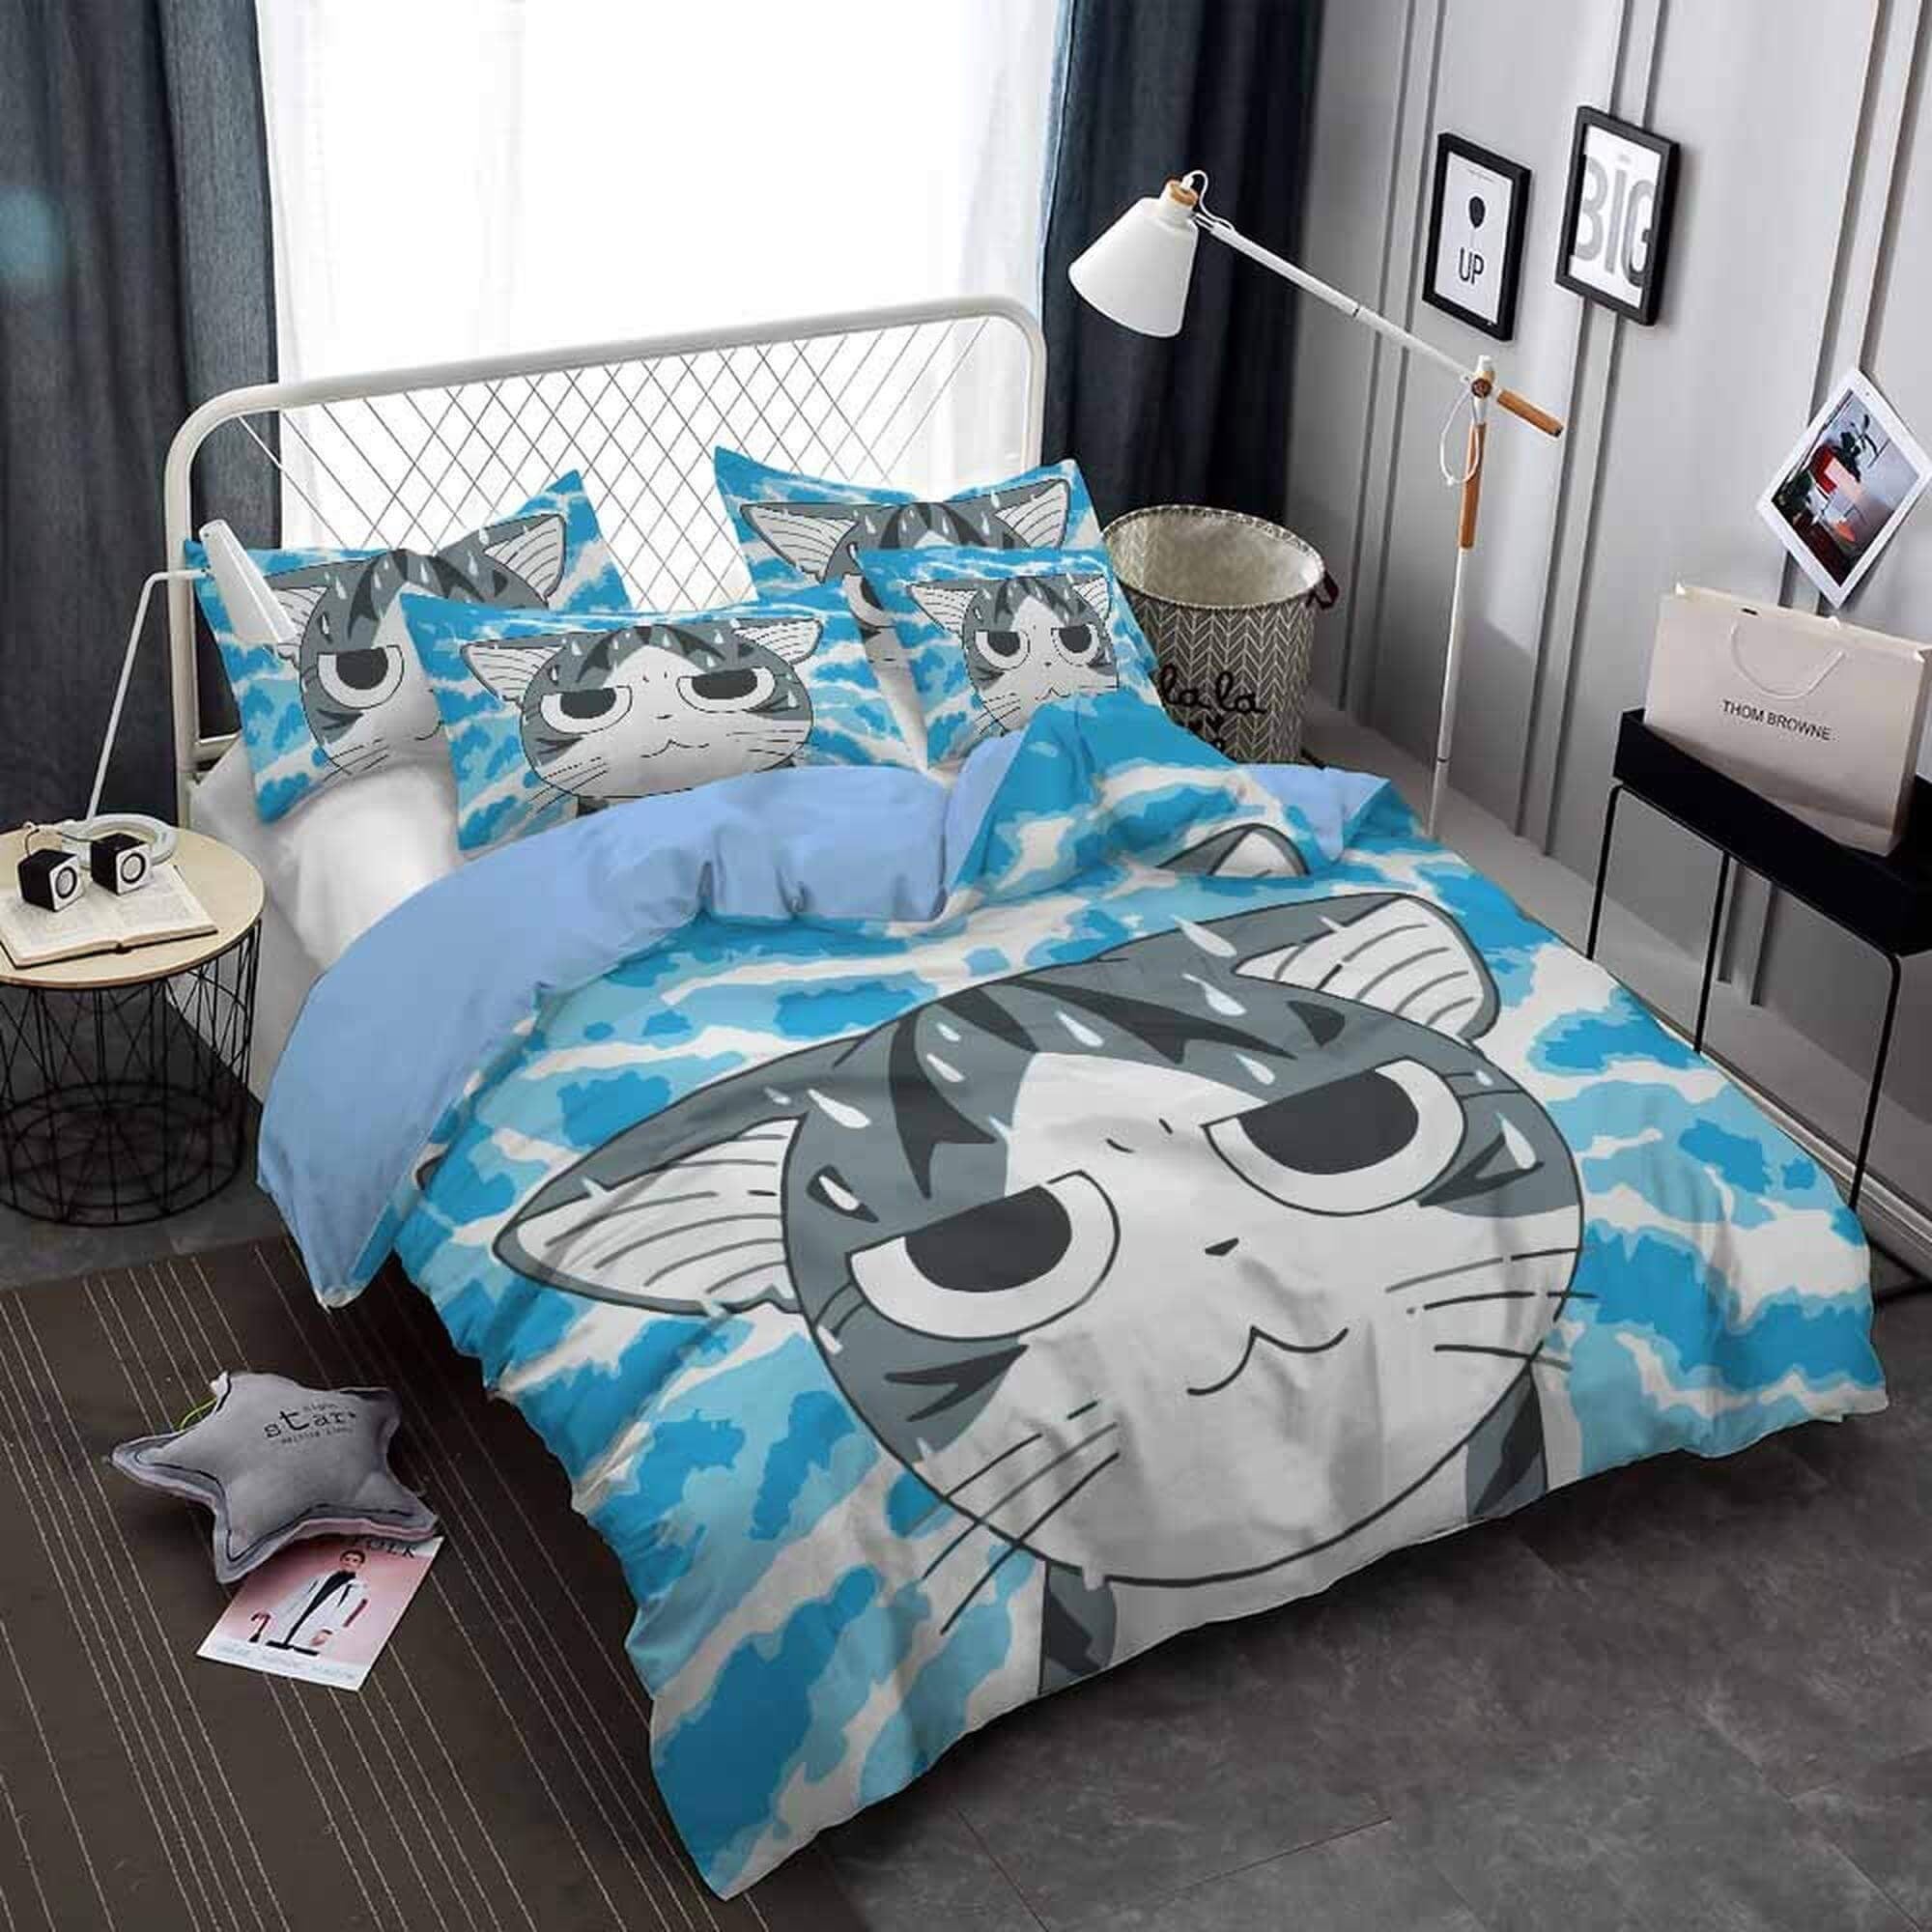 daintyduvet Cute anime cat bedding, toddler bedding, kids duvet cover set, gift for cat lovers, baby bedding, baby shower gift, blue bedding